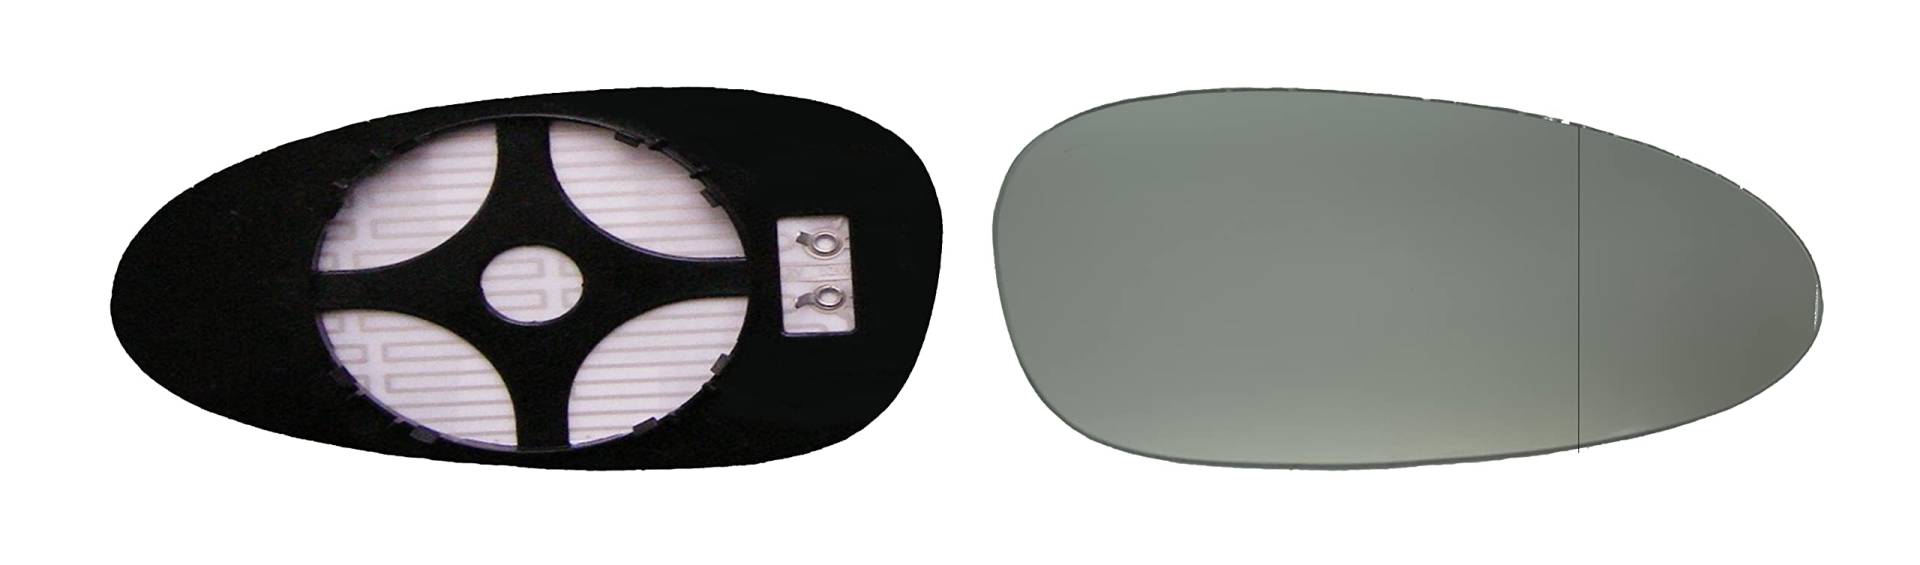 ASG Technik Außenspiegel Spiegelglas Ersatzglas kompatibel mit Porsche 911, 997 Cayman, 997 Boxster Baujahr 2005 - 2009 von ASG Technik